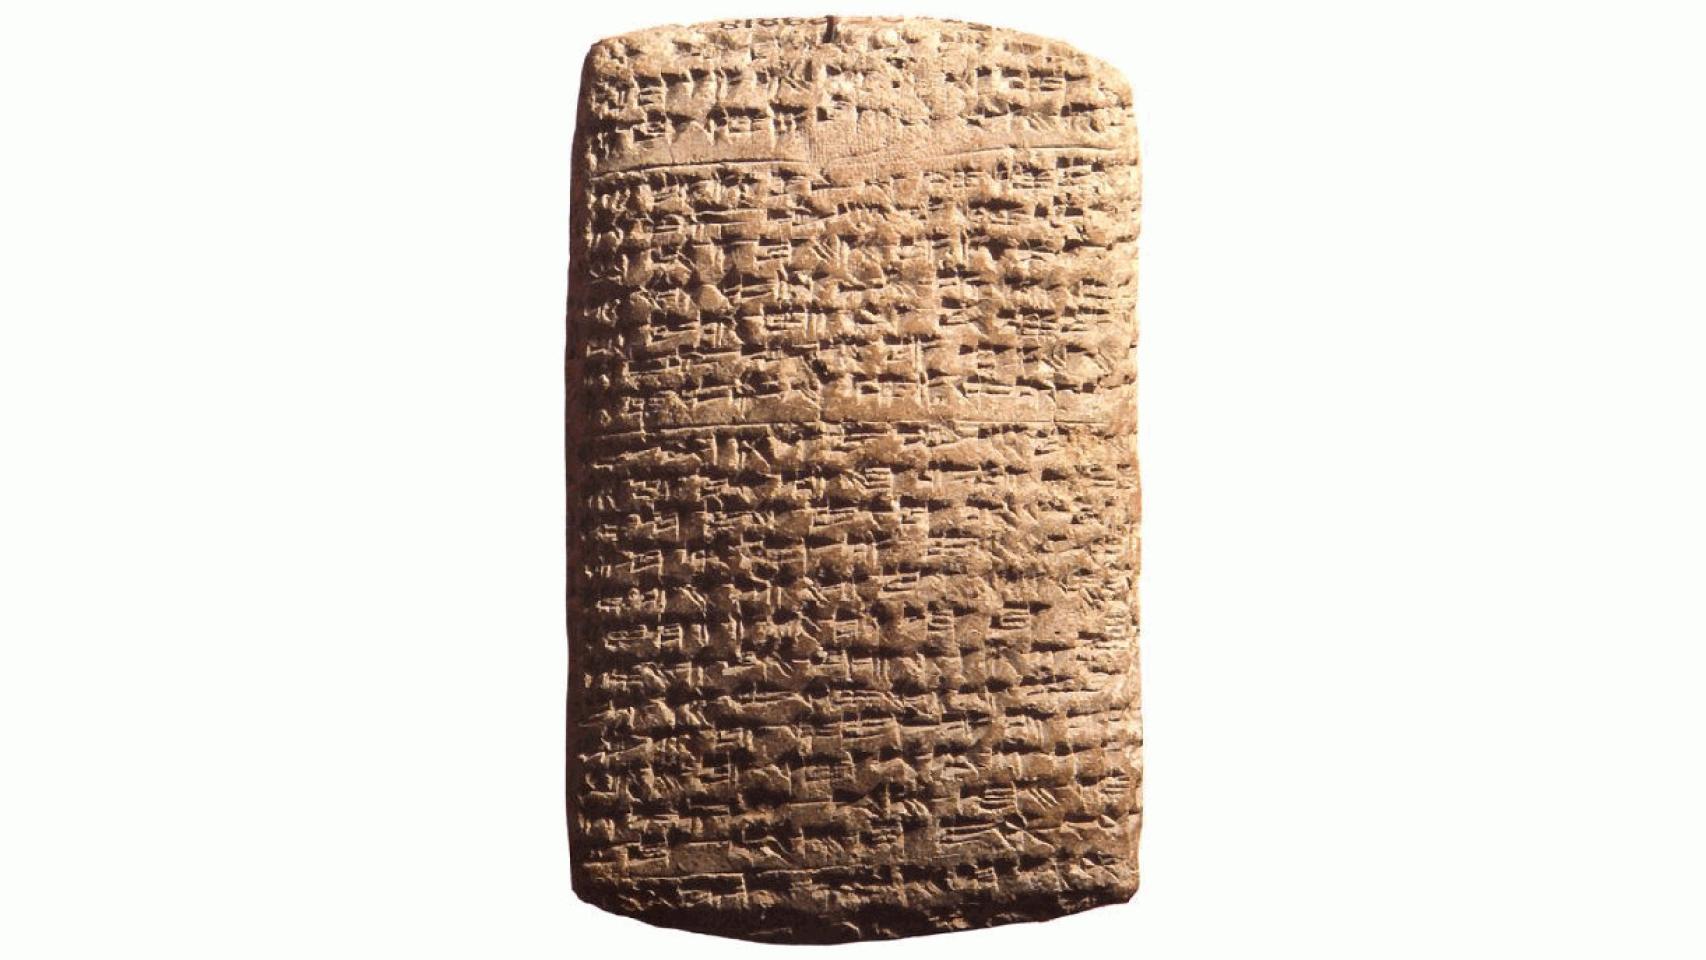 Una del as cartas de Amarna con escritura cuneiforme.